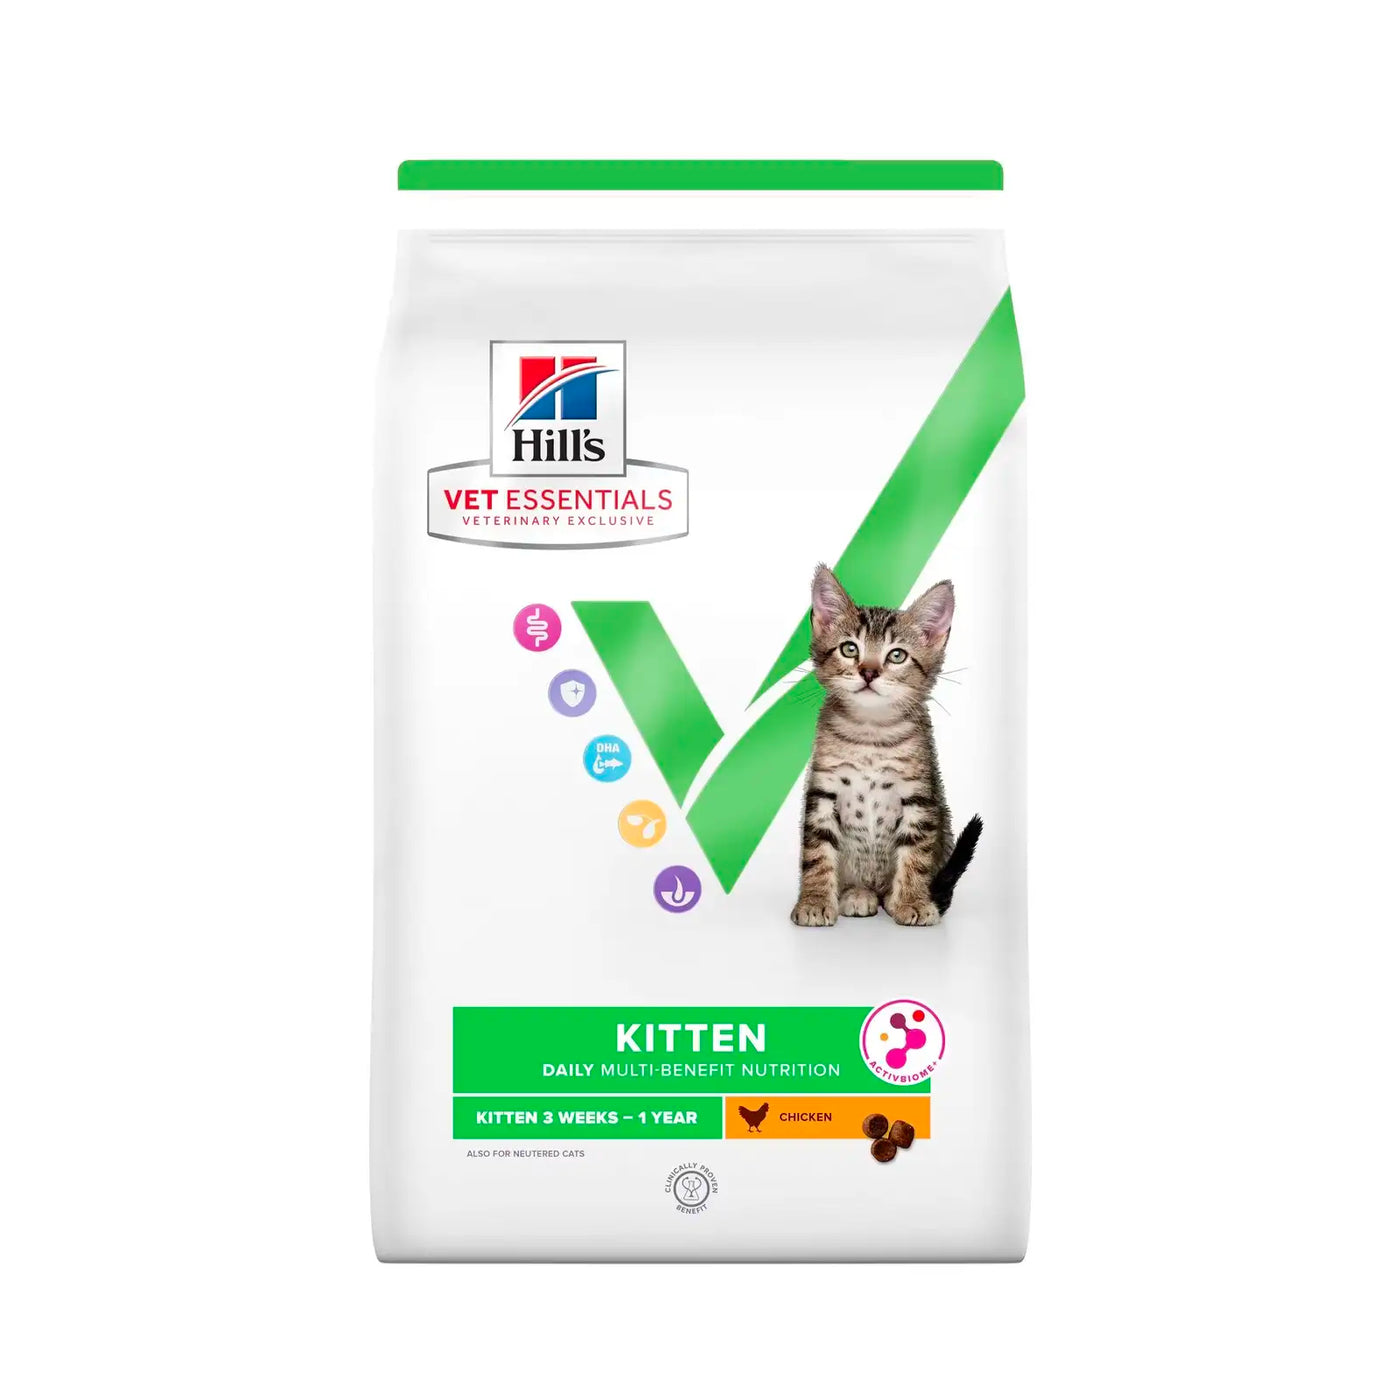 Hill's VetEssentials Diet Kitten Food - Vetopia Online Store